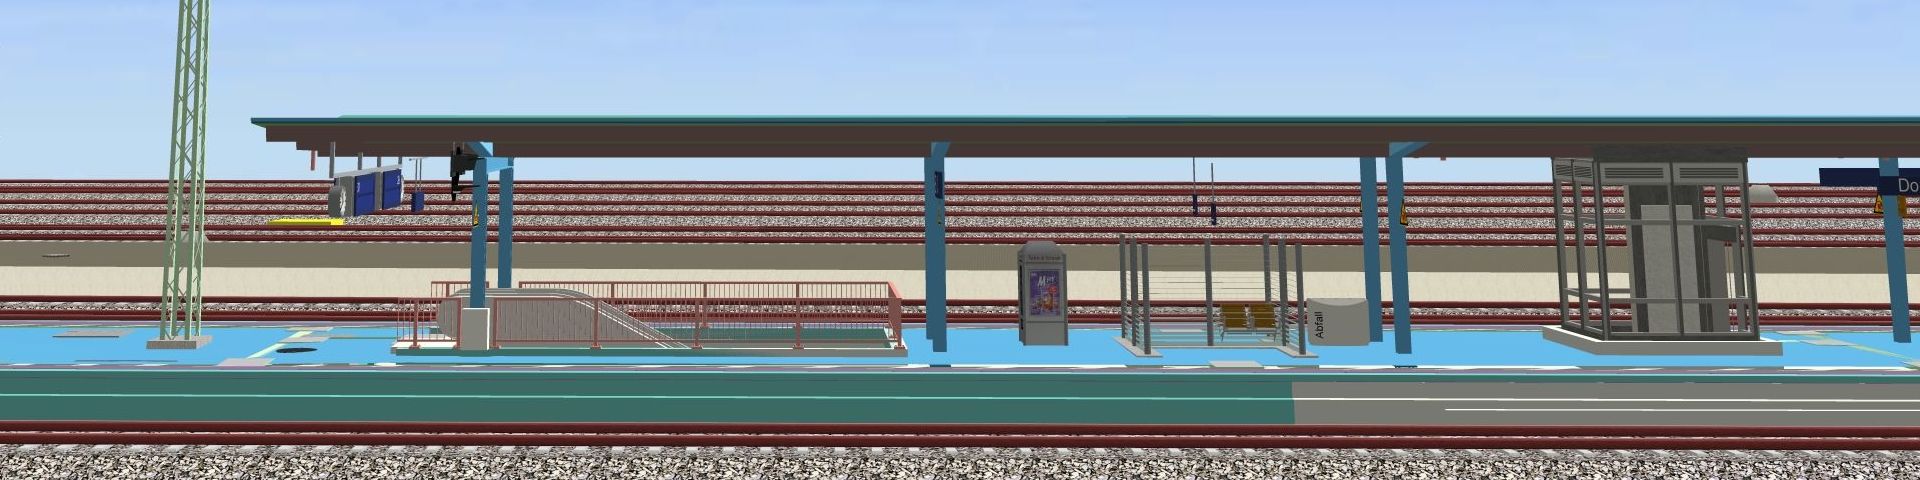 Visualisierung eines Bahnsteigs in einem 3D BIM-Modell